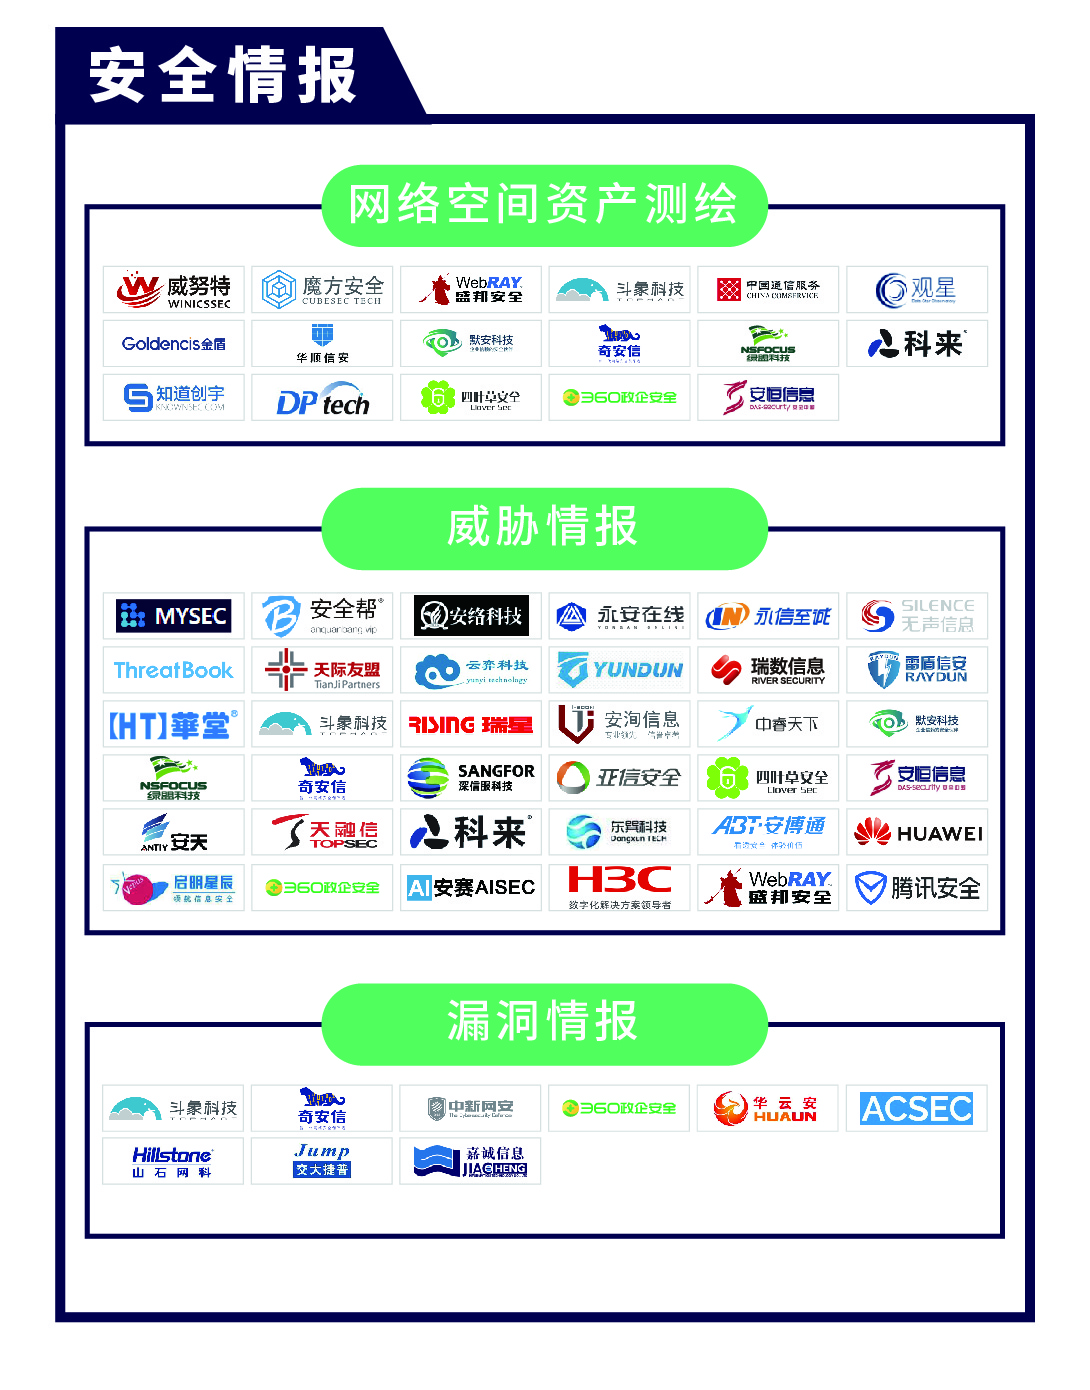 《CCSIP 2020中国网络安全产业全景图》正式发布 | FreeBuf咨询-第14张图片-网盾网络安全培训